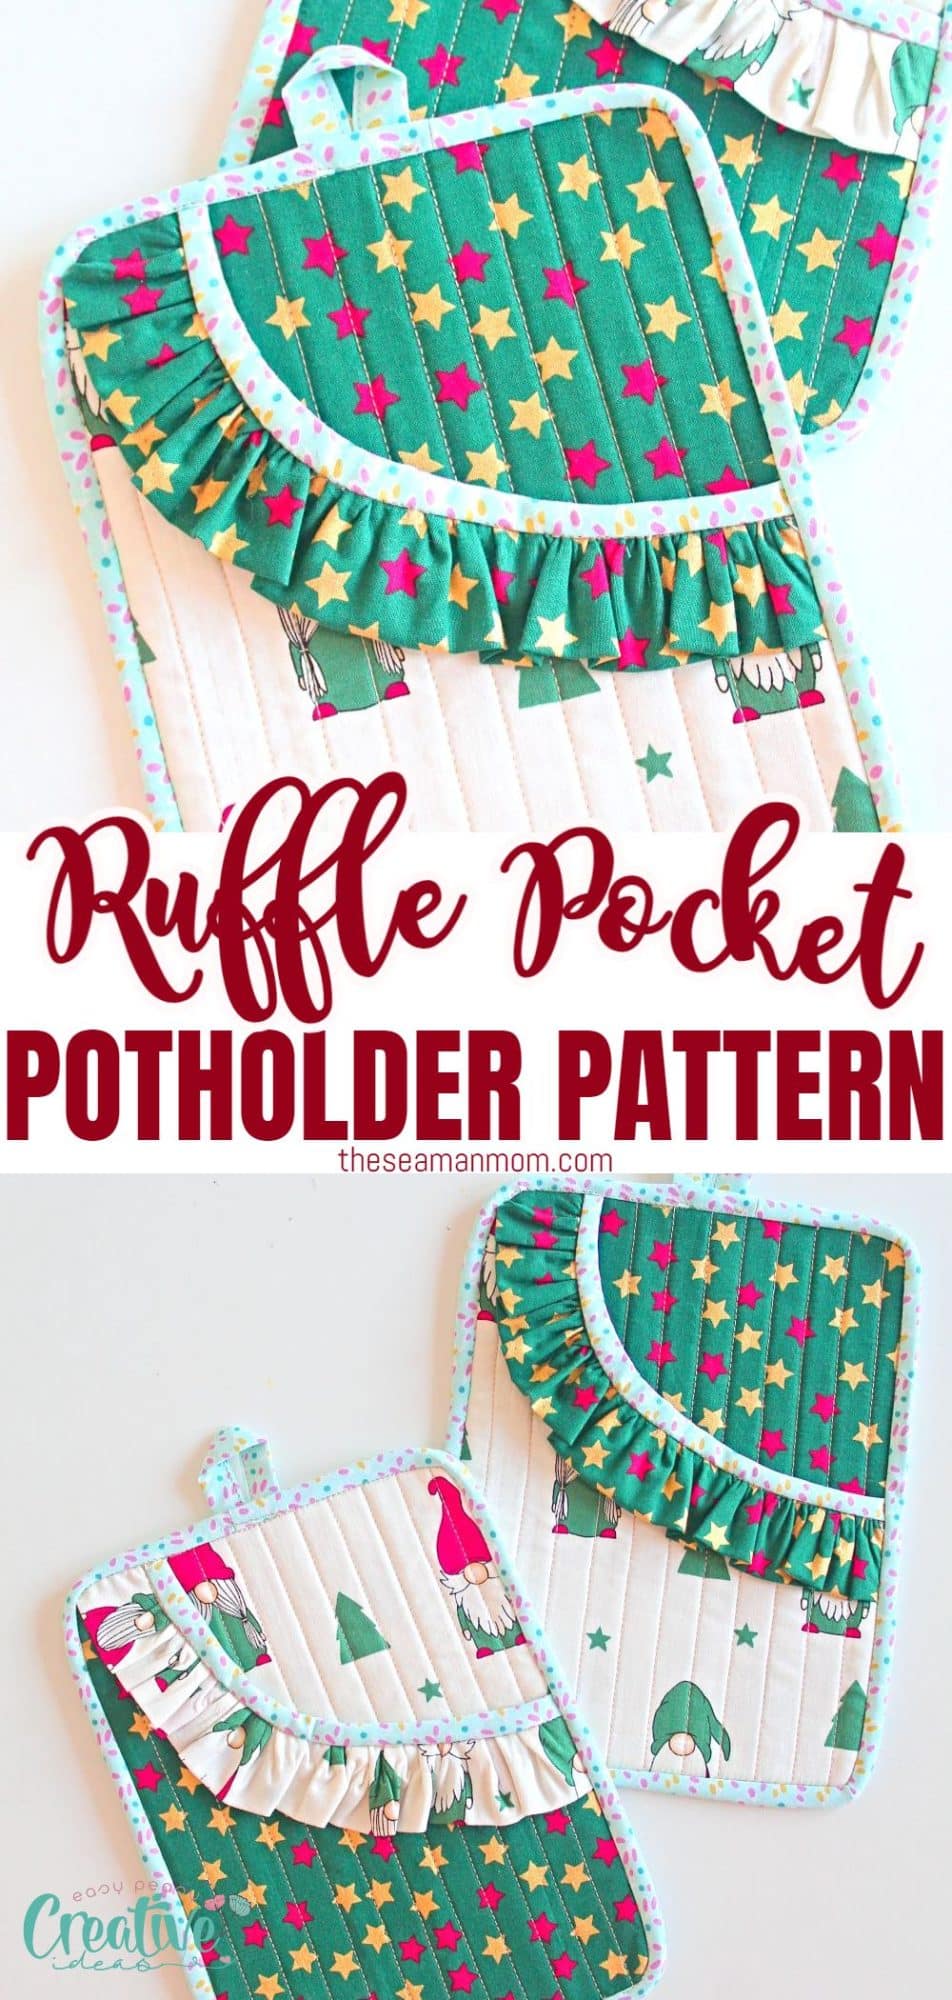 Pocket potholder sewing pattern